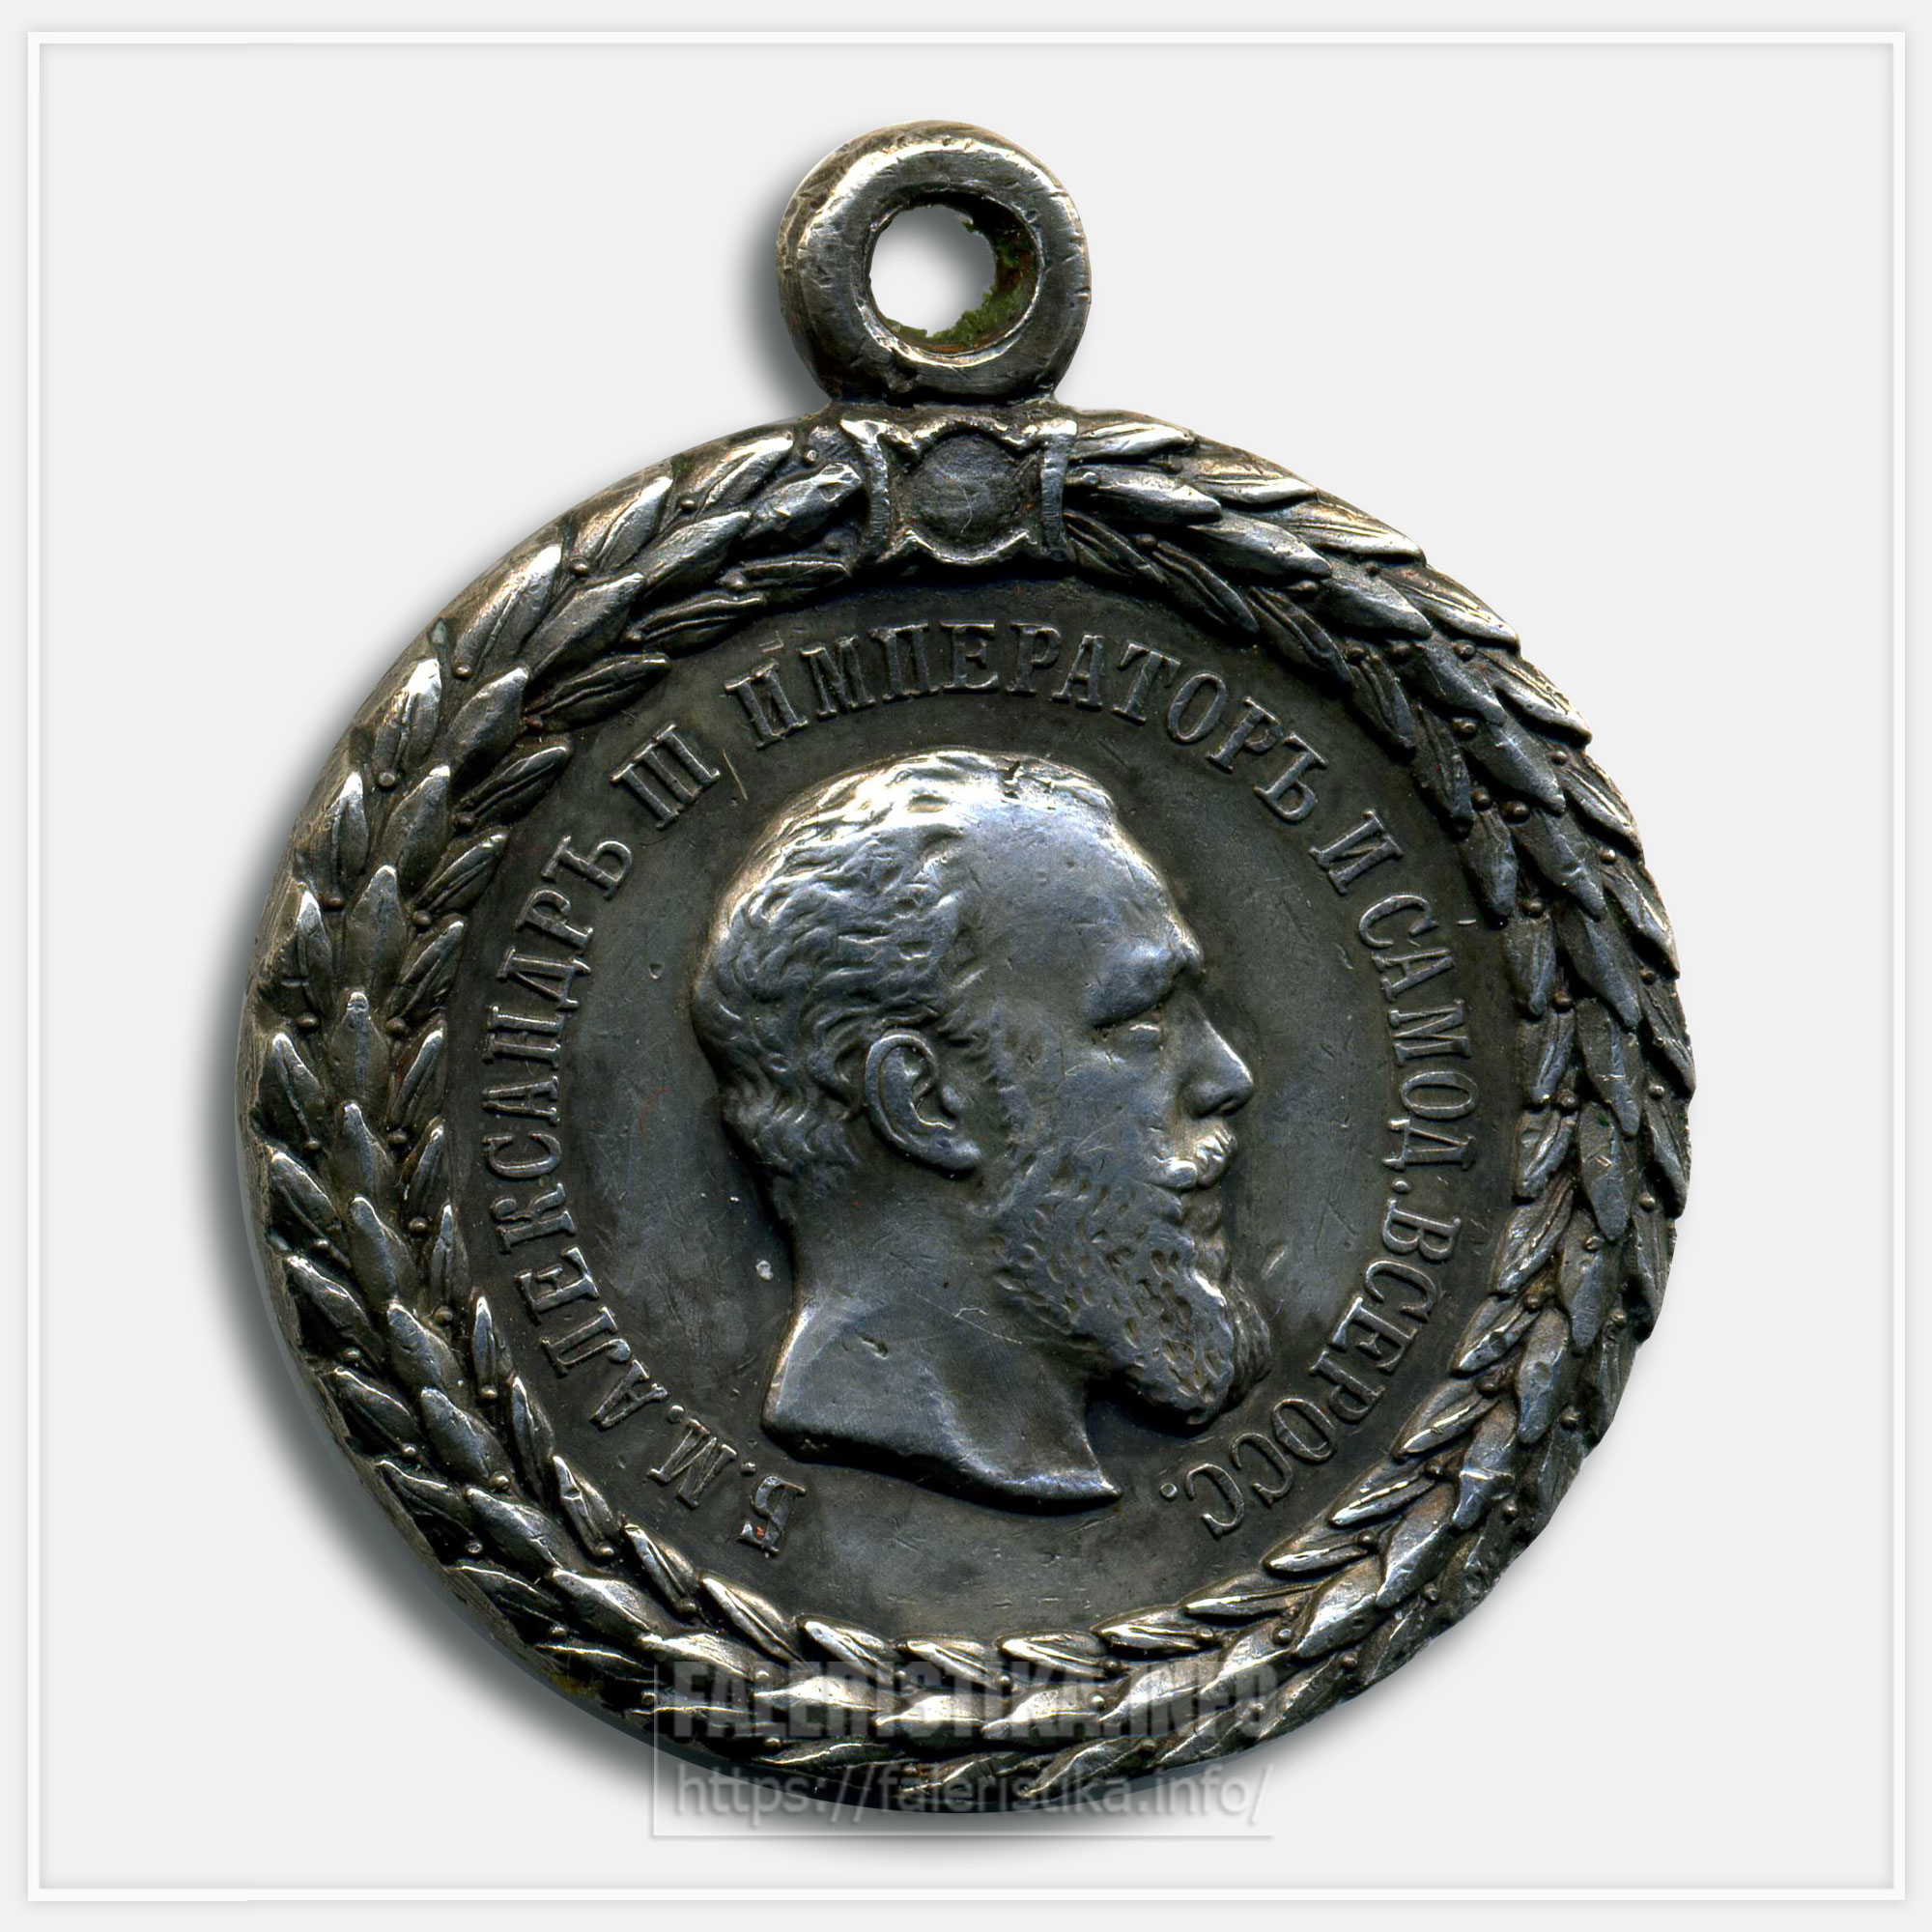 Медаль "За беспорочную службу в полиции" Александр III